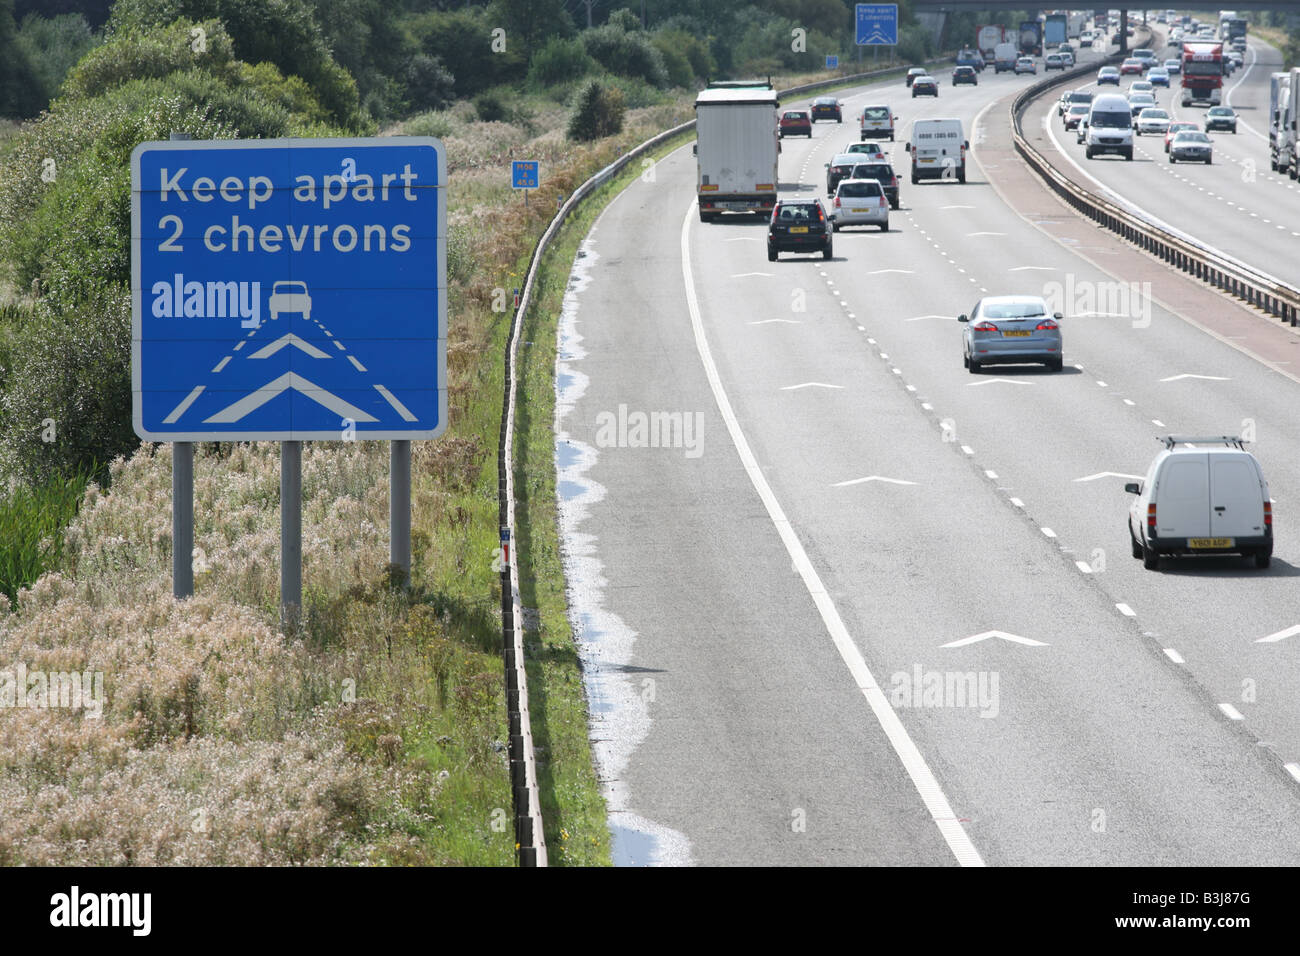 Halten neben 2 chevrons Autobahn Verkehrszeichen und Markierungen, M56 Nordwesten Englands Stockfoto